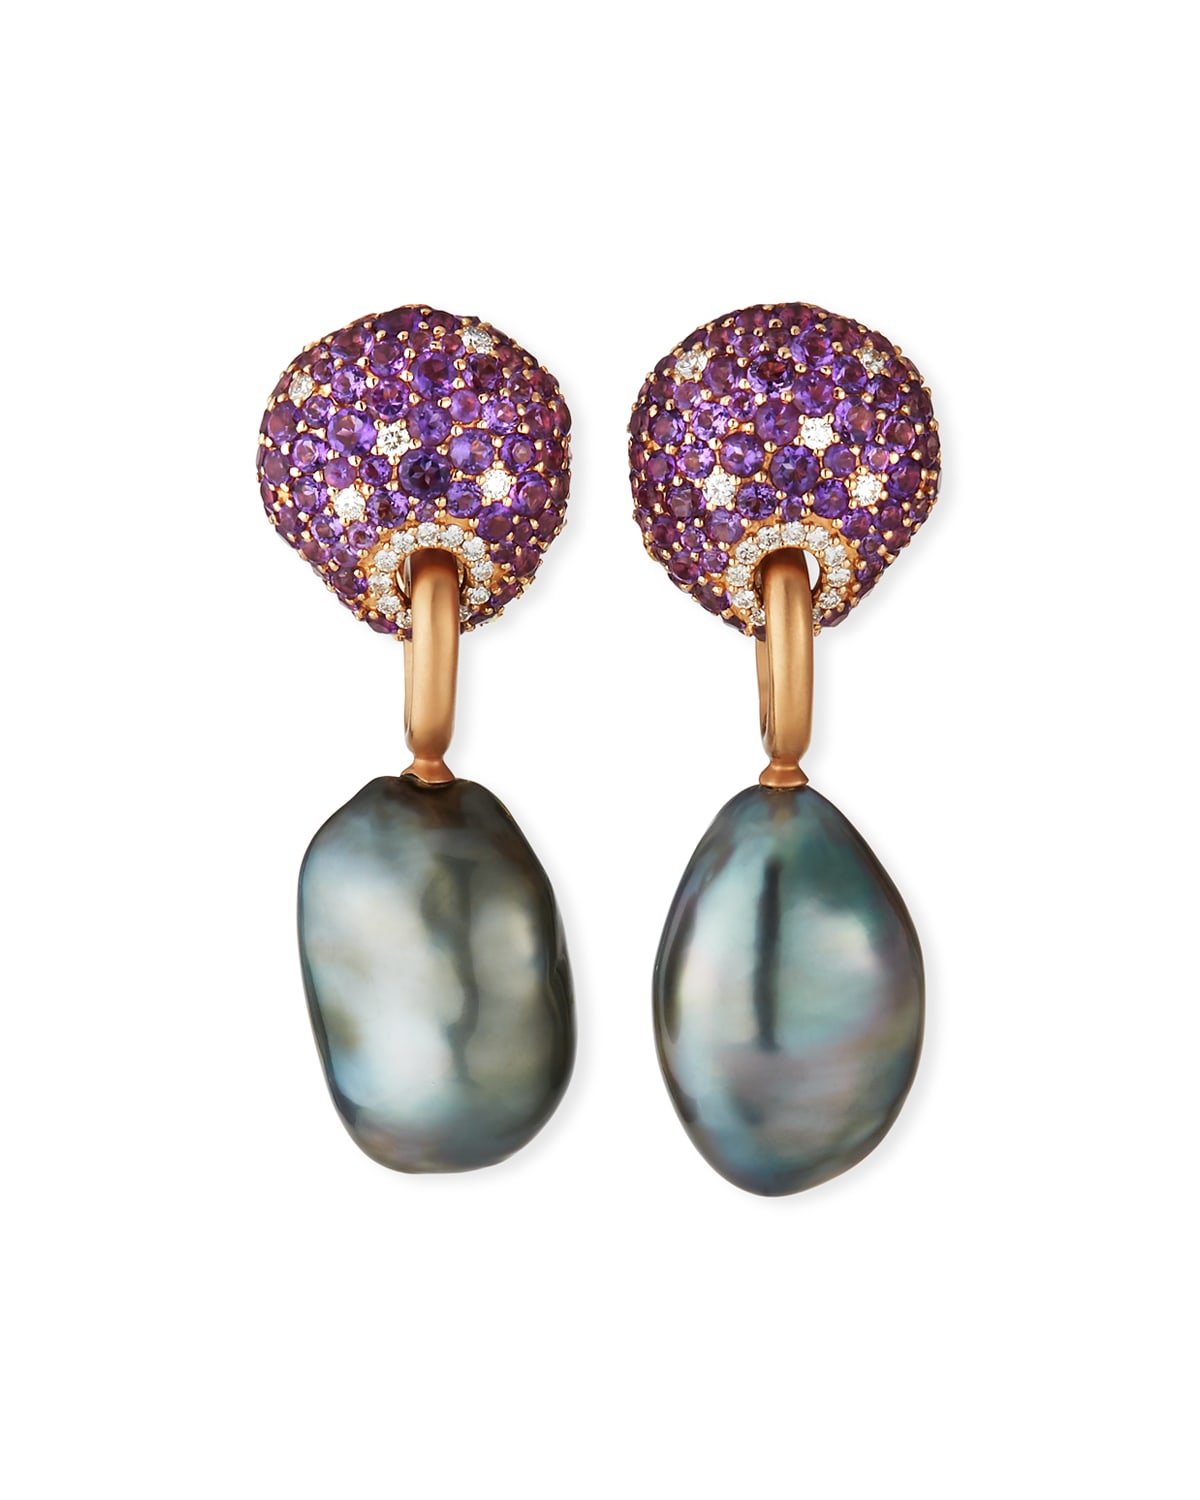 Margot McKinney Jewelry 18k Amethyst, Sapphire & Diamond Earrings w/ Detachable Pearls